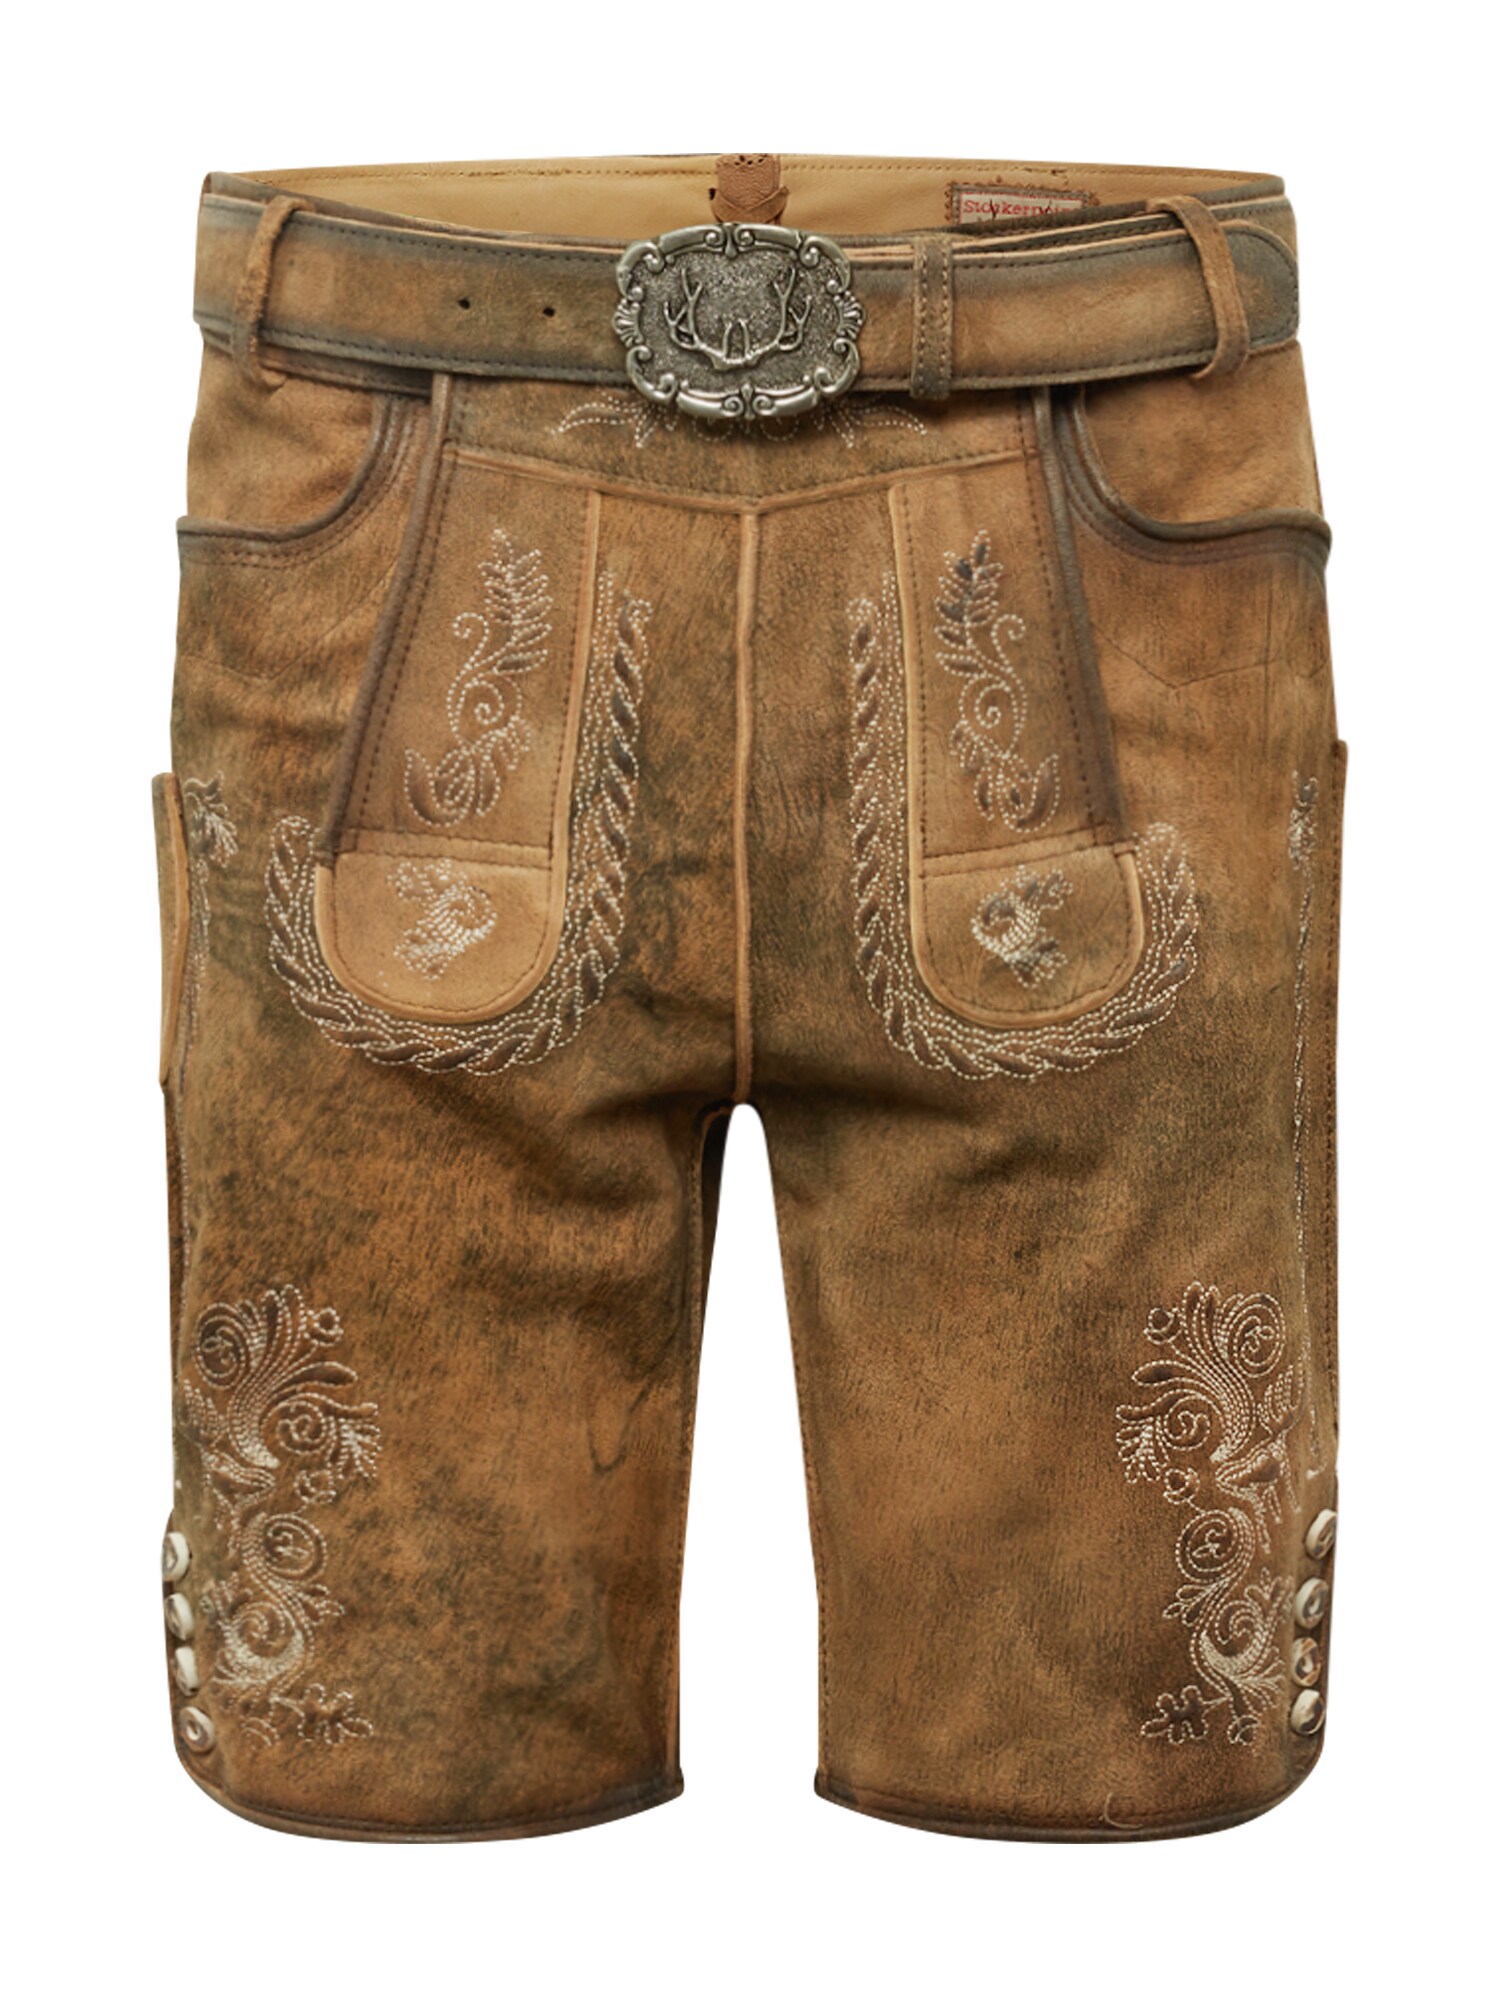 STOCKERPOINT Kelnės su tradiciniais raštais 'Thomas 2' gelsvai pilka spalva / ruda